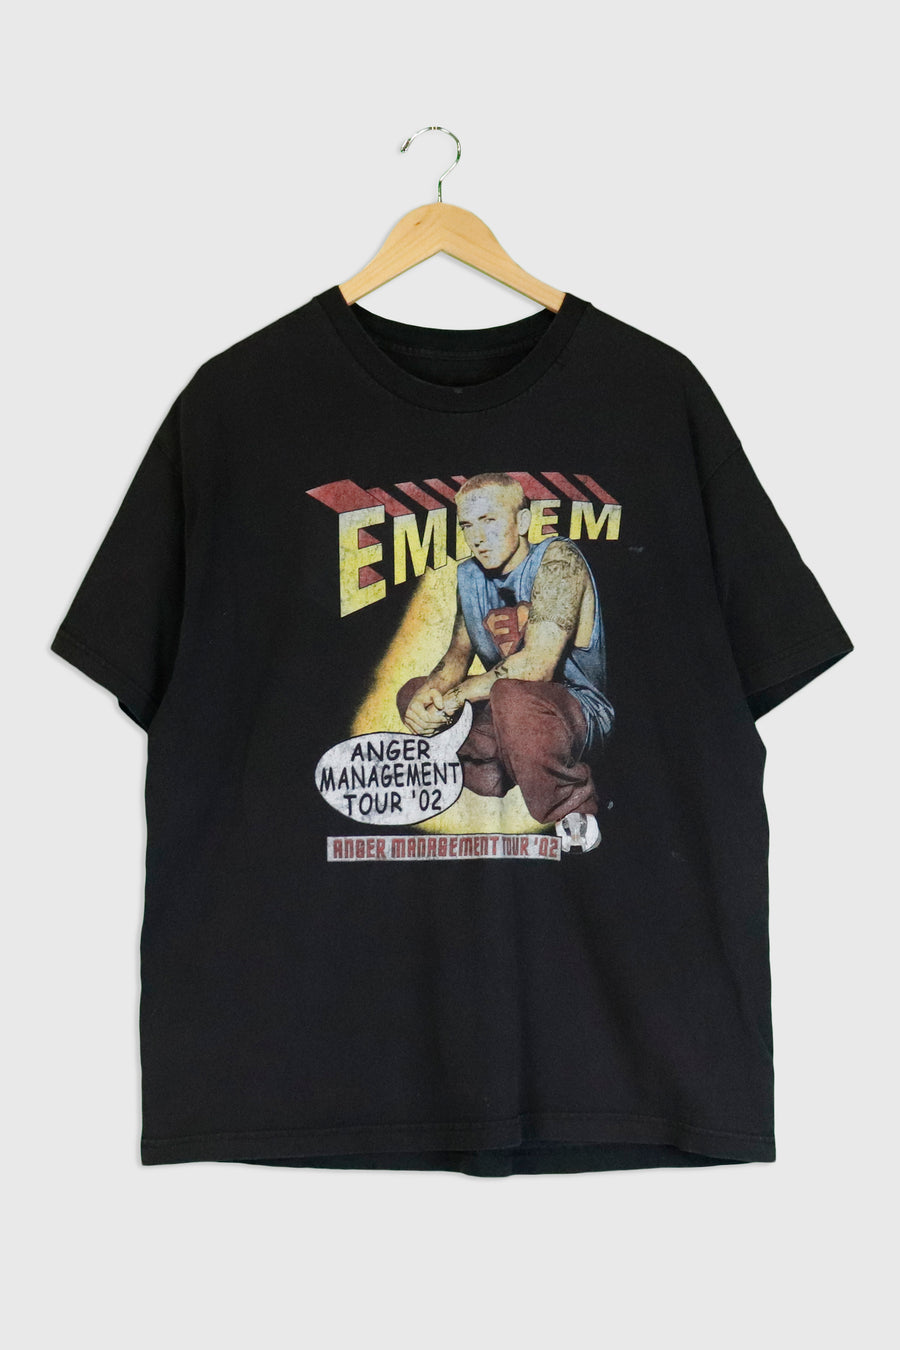 Vintage 2002 Eminem Anger Management Tour T Shirt Sz XL